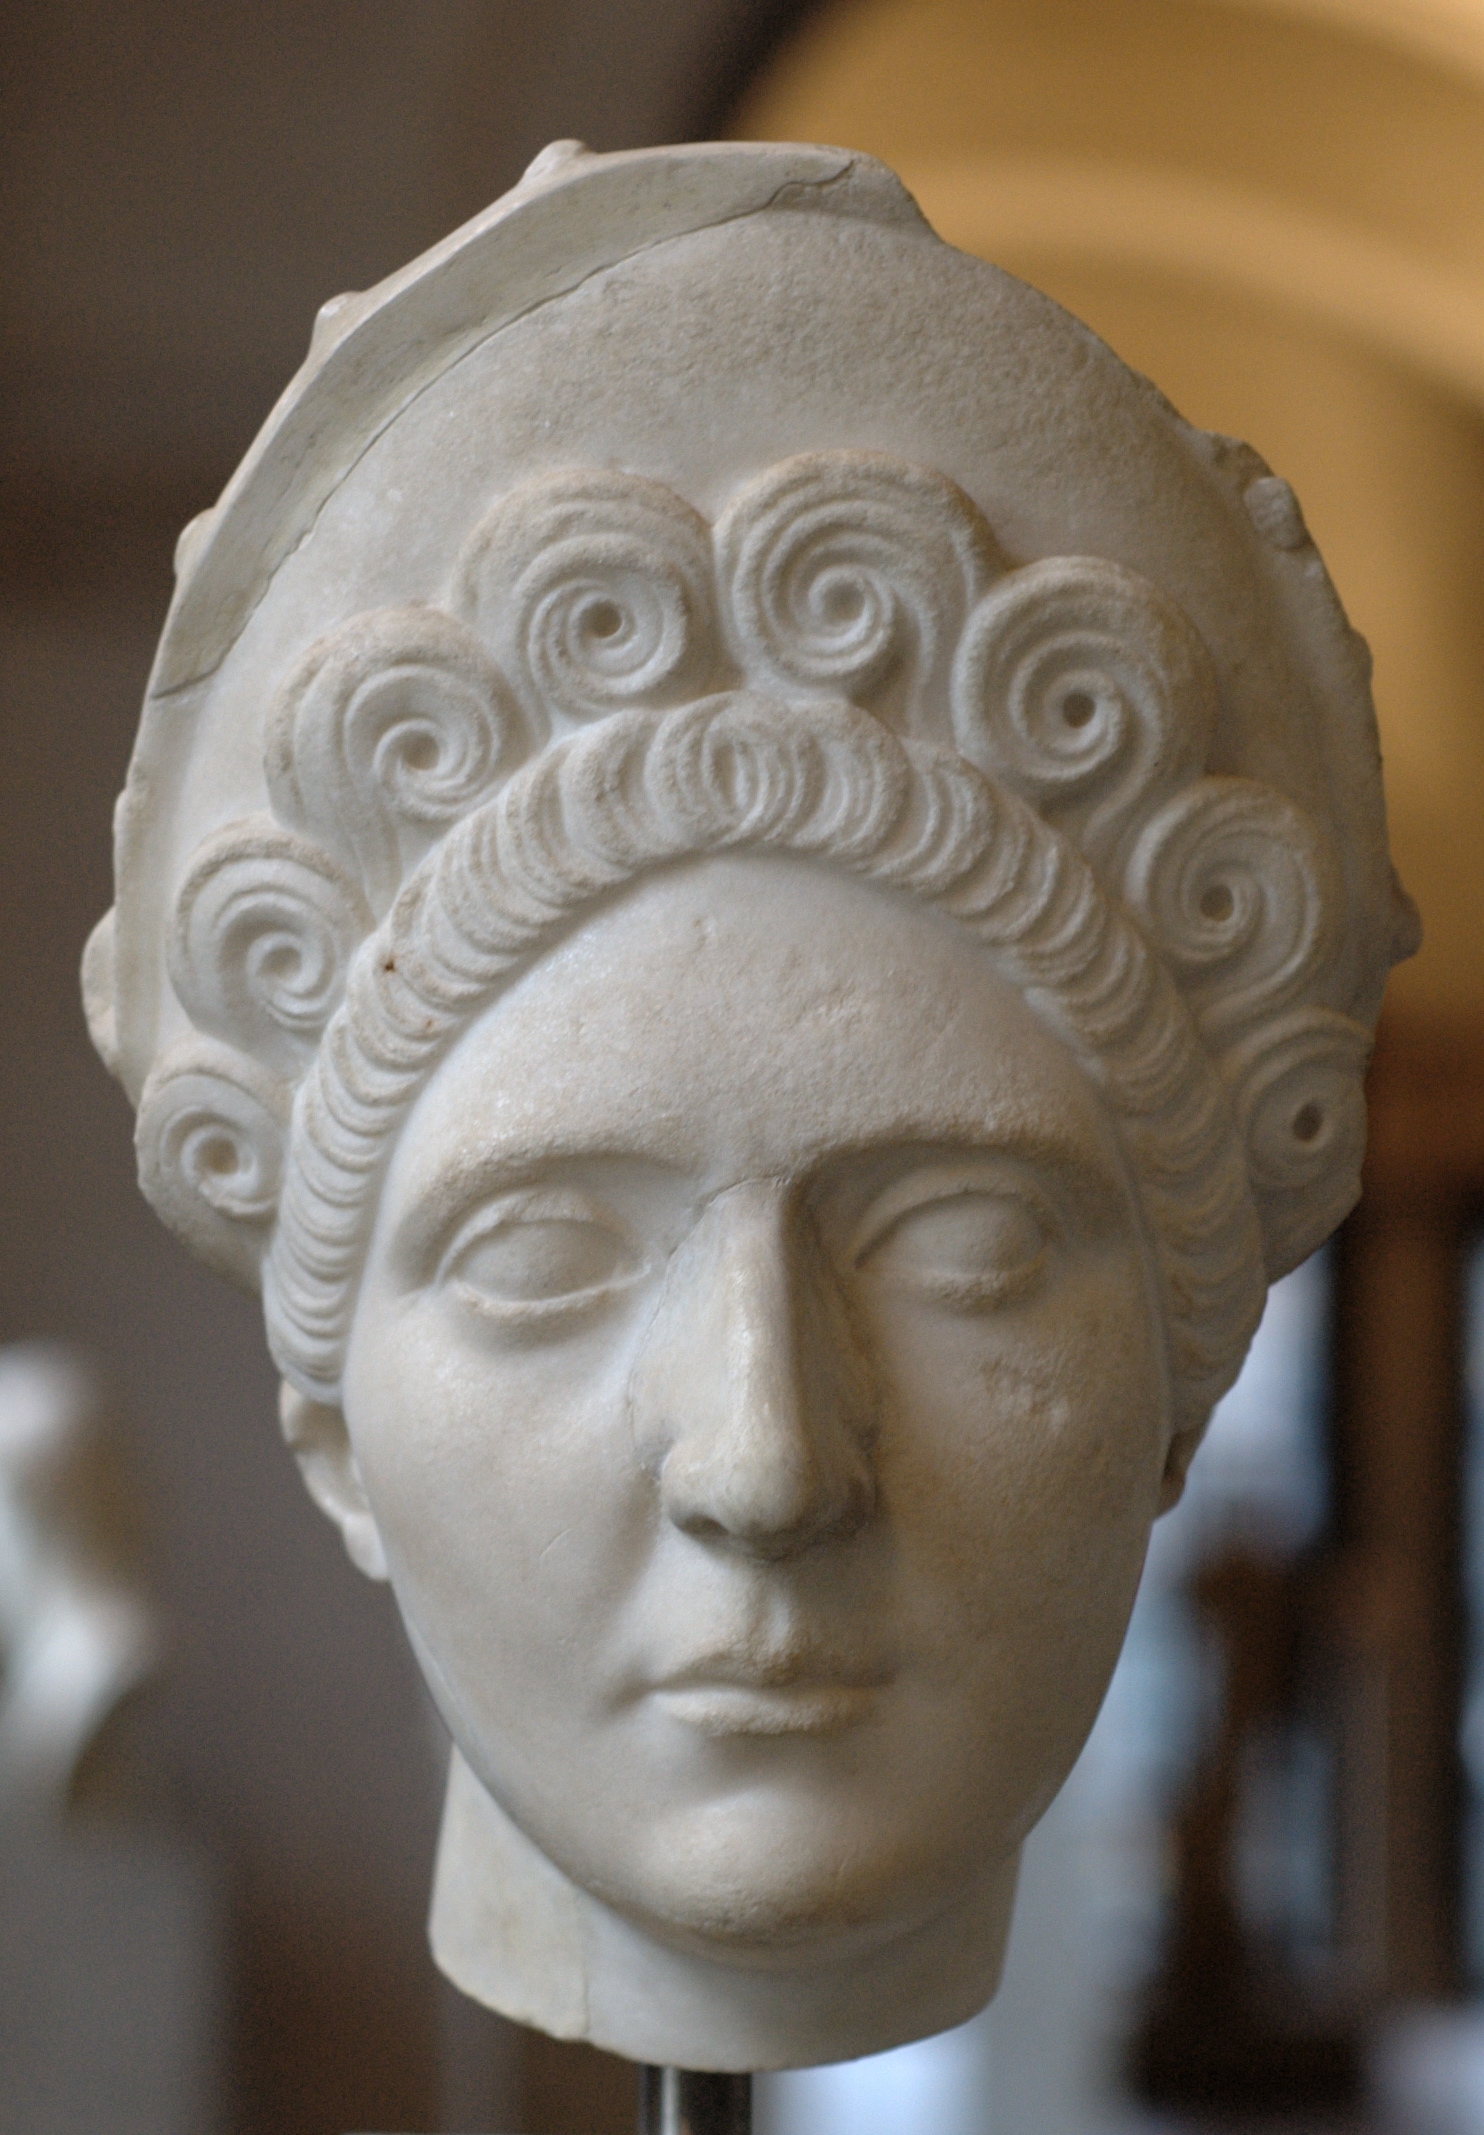 L'imperatrice Plotina, protettrice politica di Adriano. A lei probabilmente si deve il matrimonio fra Adriano e Vibia Sabina, cugina dell'imperatore Traiano